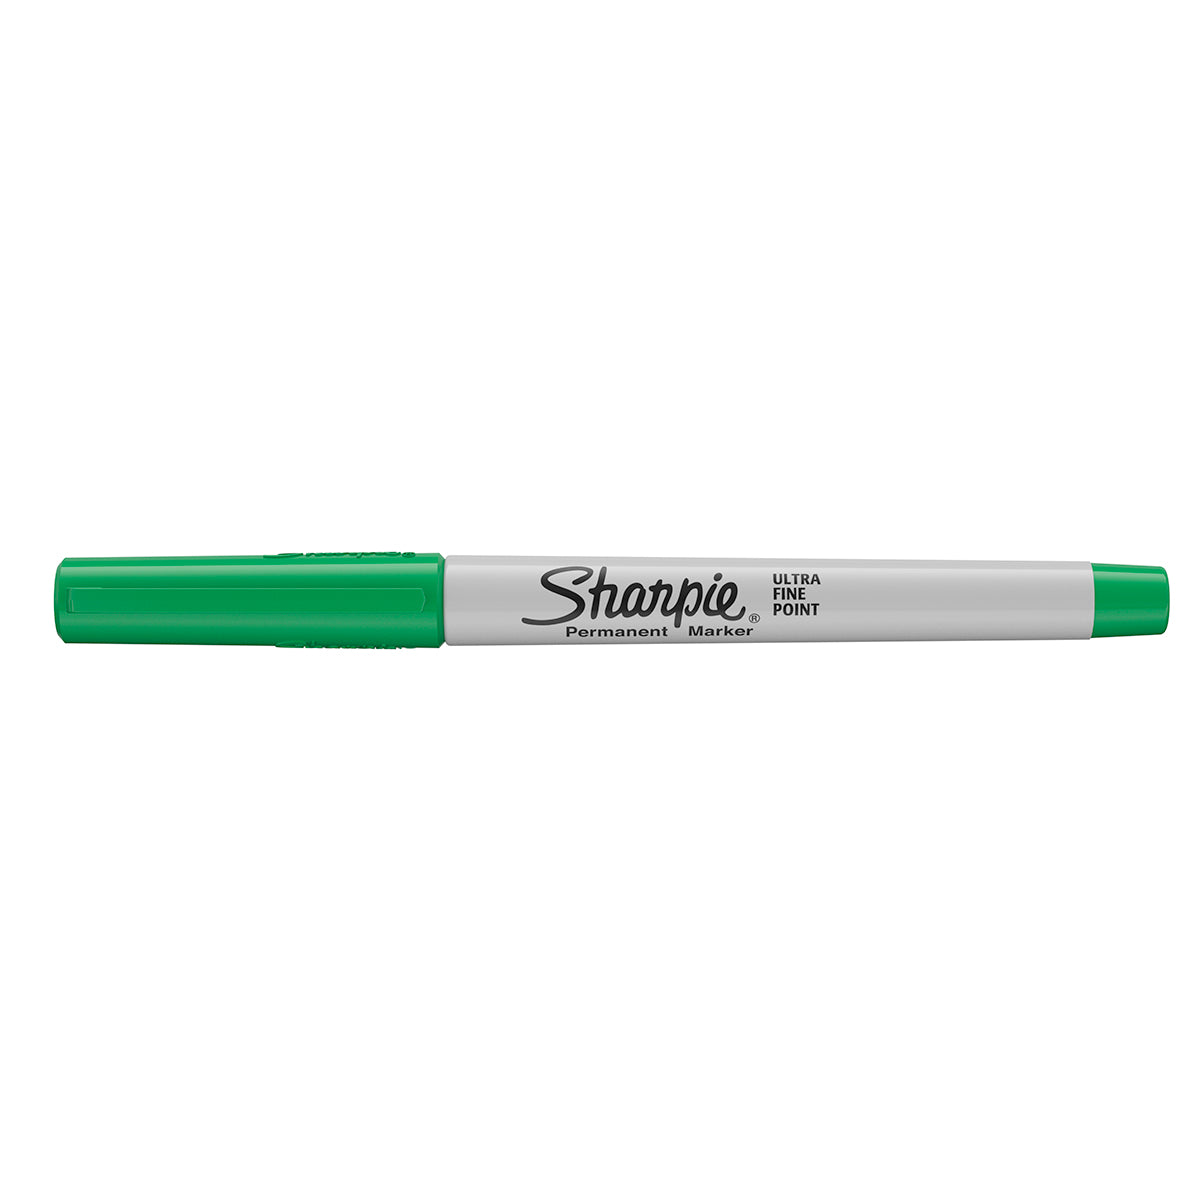 Sharpie Fine Point Permanent Marker - Green